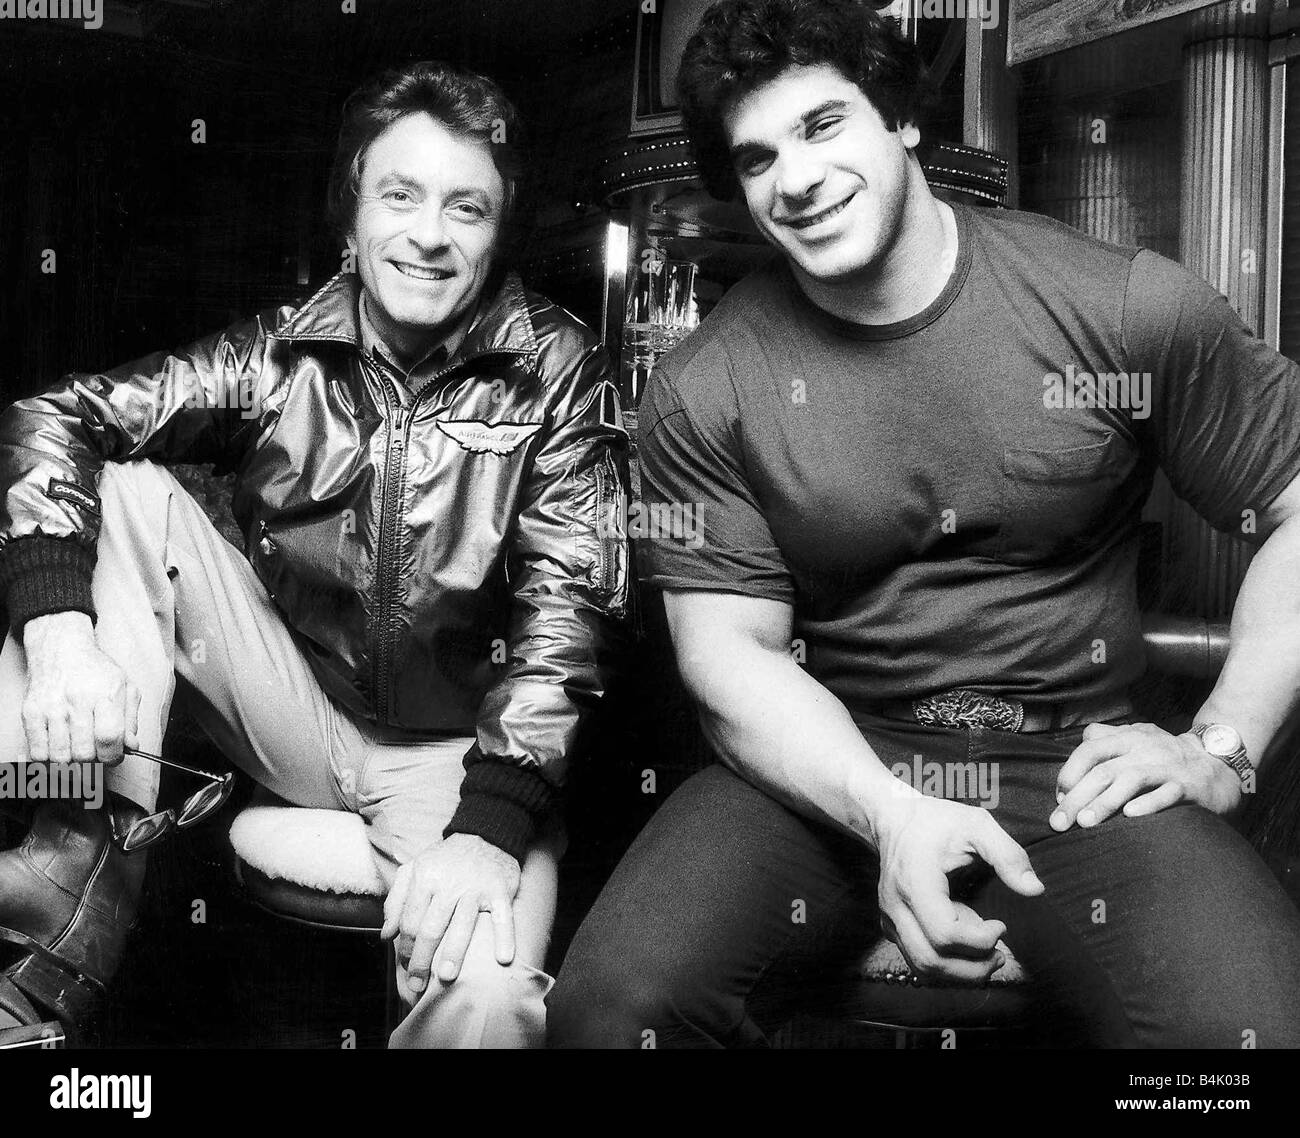 Lou Ferrigno Schauspieler der realen Incredible Hulk mit Bill Bixby, Dr. David Banister spielte, März 1980 Dbase Stockfoto